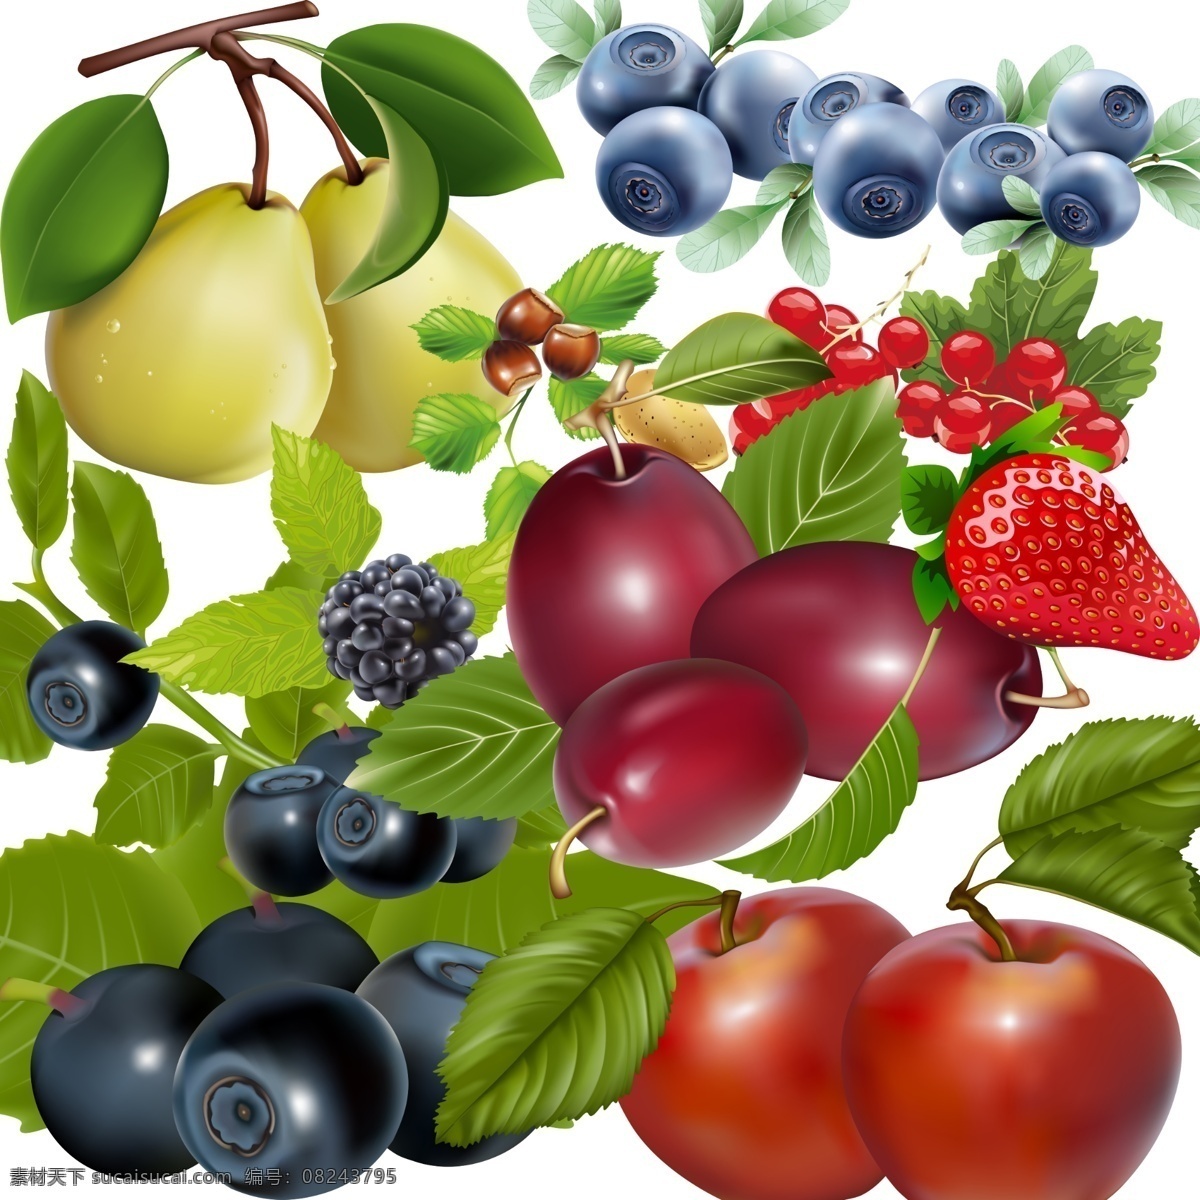 水果 集 分层 草莓 卡通 蓝莓 梨 李子 源文件 模板下载 水果集 树莓 psd源文件 餐饮素材